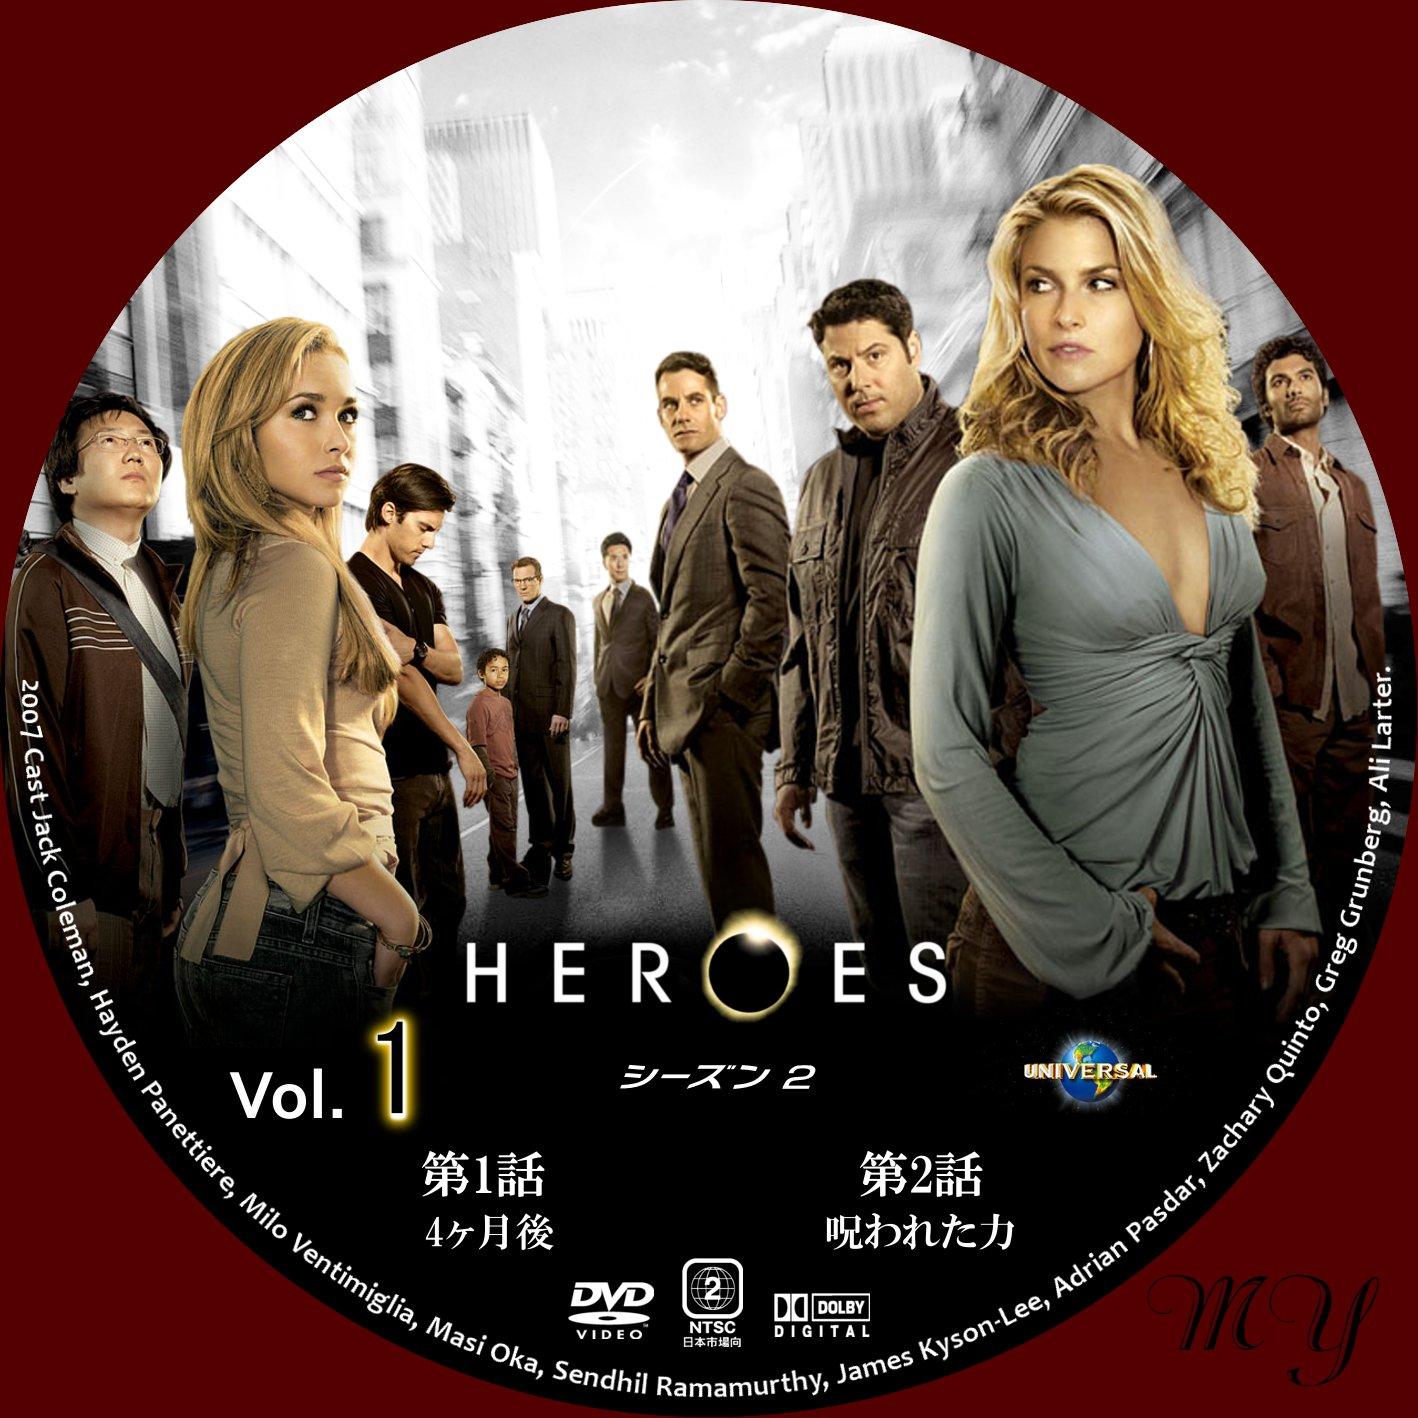 ほにょほにょな一日無料dvd ラベル製作室 Heroes ヒーローズ シーズン２